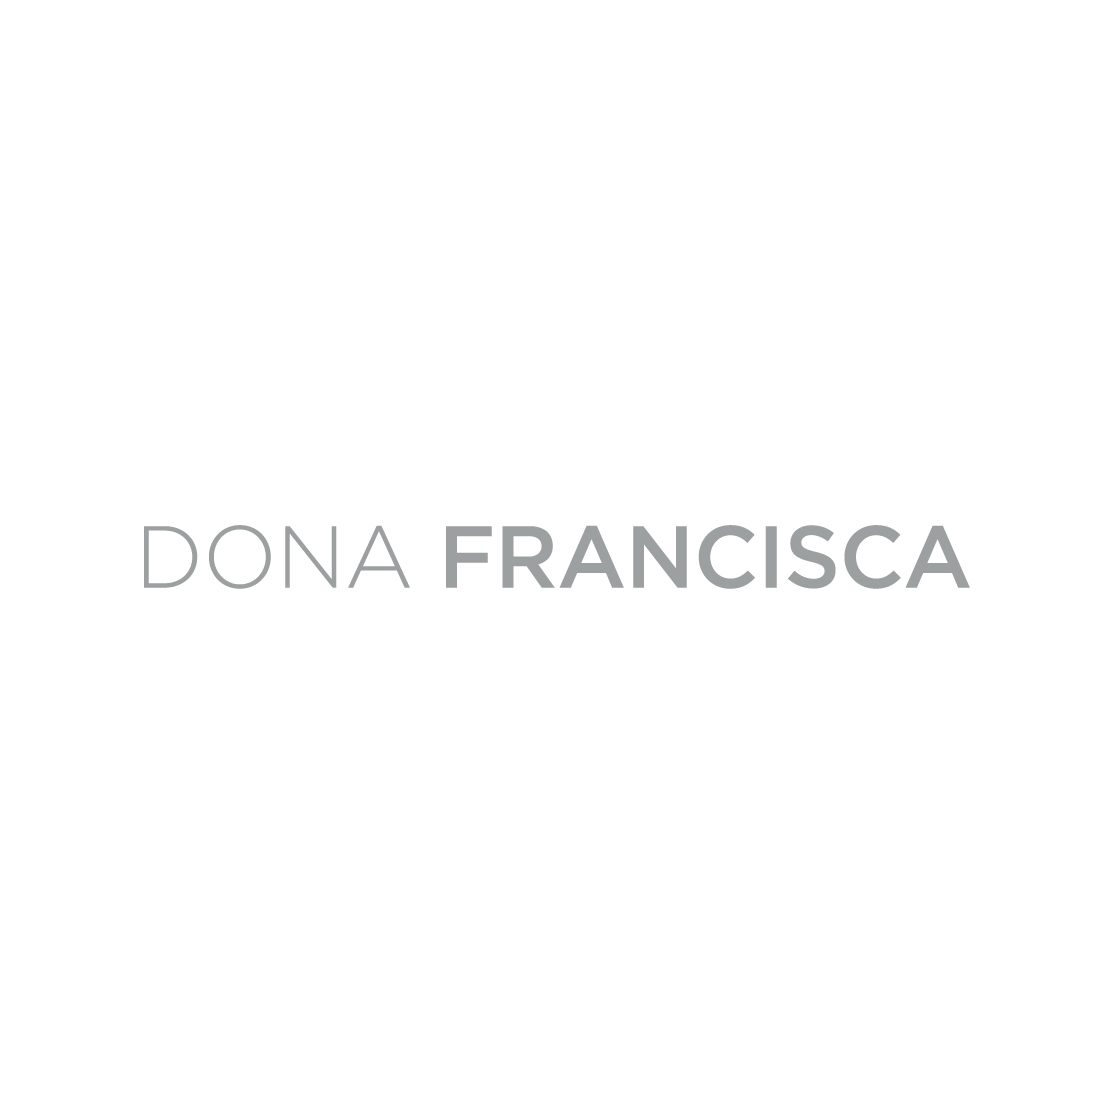 Dona Francisca